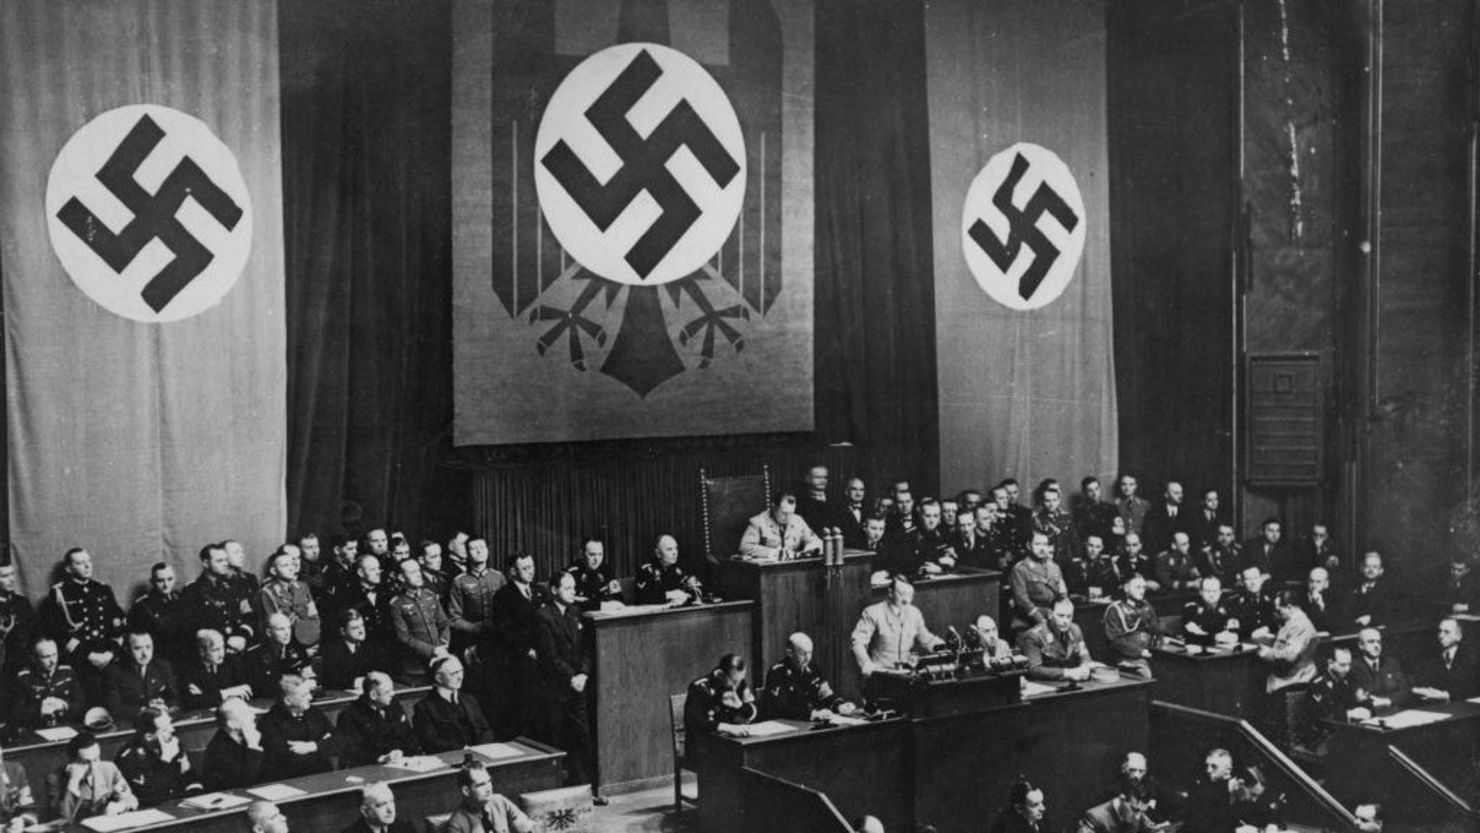 El canciller alemán Adolf Hitler (1889 - 1945) habla en el Reichstag de Berlín, Alemania, antes de la entrada de las tropas alemanas en Renania, el 7 de marzo de 1936. También aparecen en la foto Rudolf Hess y Joseph Goebbels.